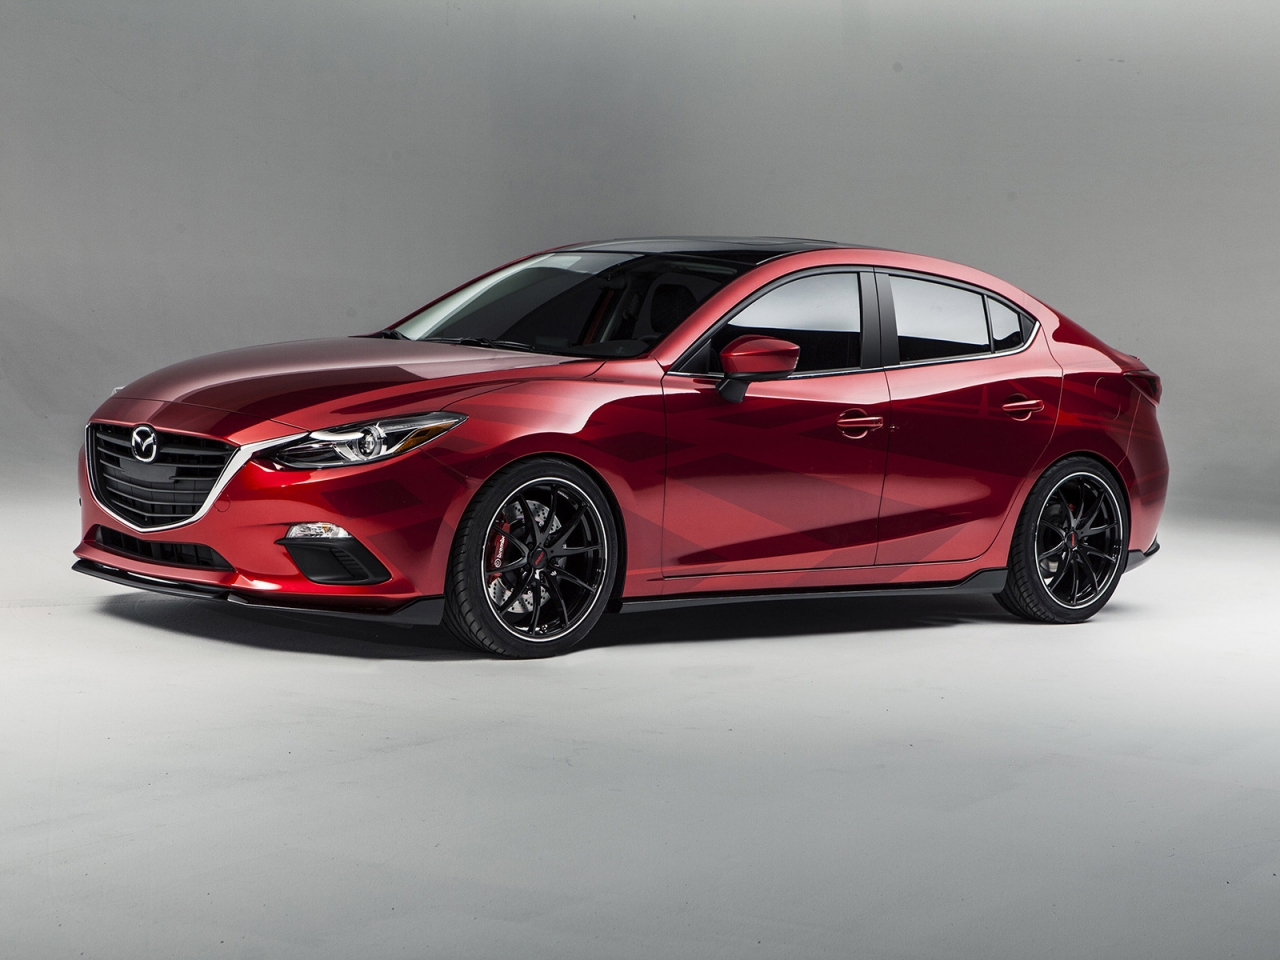 2013 Mazda Sema Concept for 1280 x 960 resolution